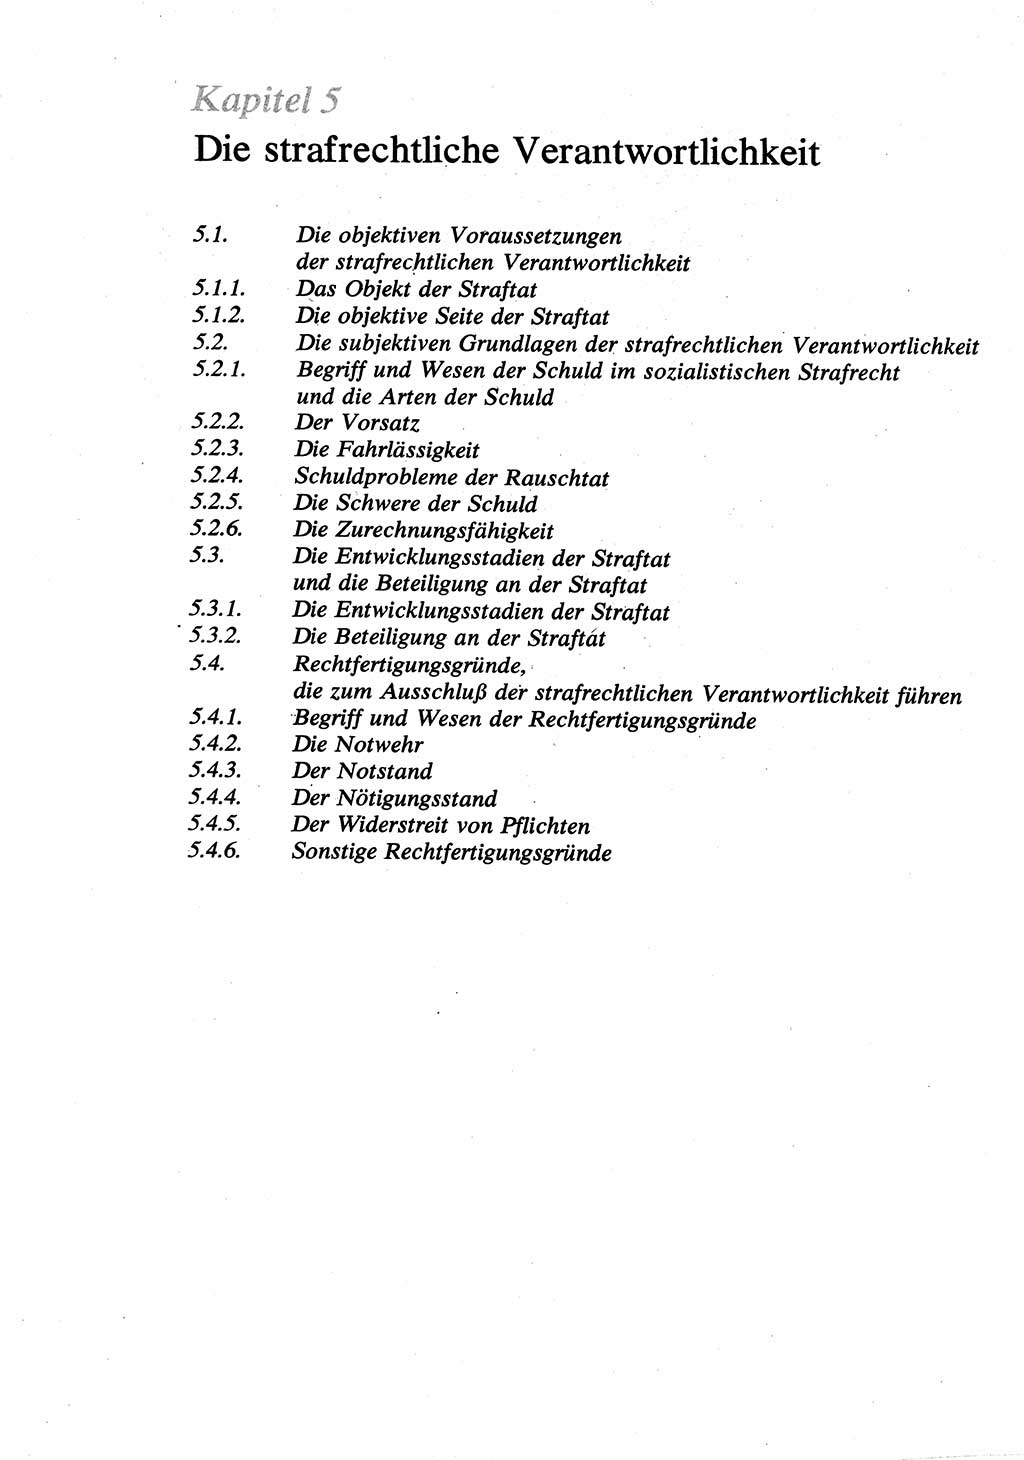 Strafrecht [Deutsche Demokratische Republik (DDR)], Allgemeiner Teil, Lehrbuch 1976, Seite 218 (Strafr. DDR AT Lb. 1976, S. 218)